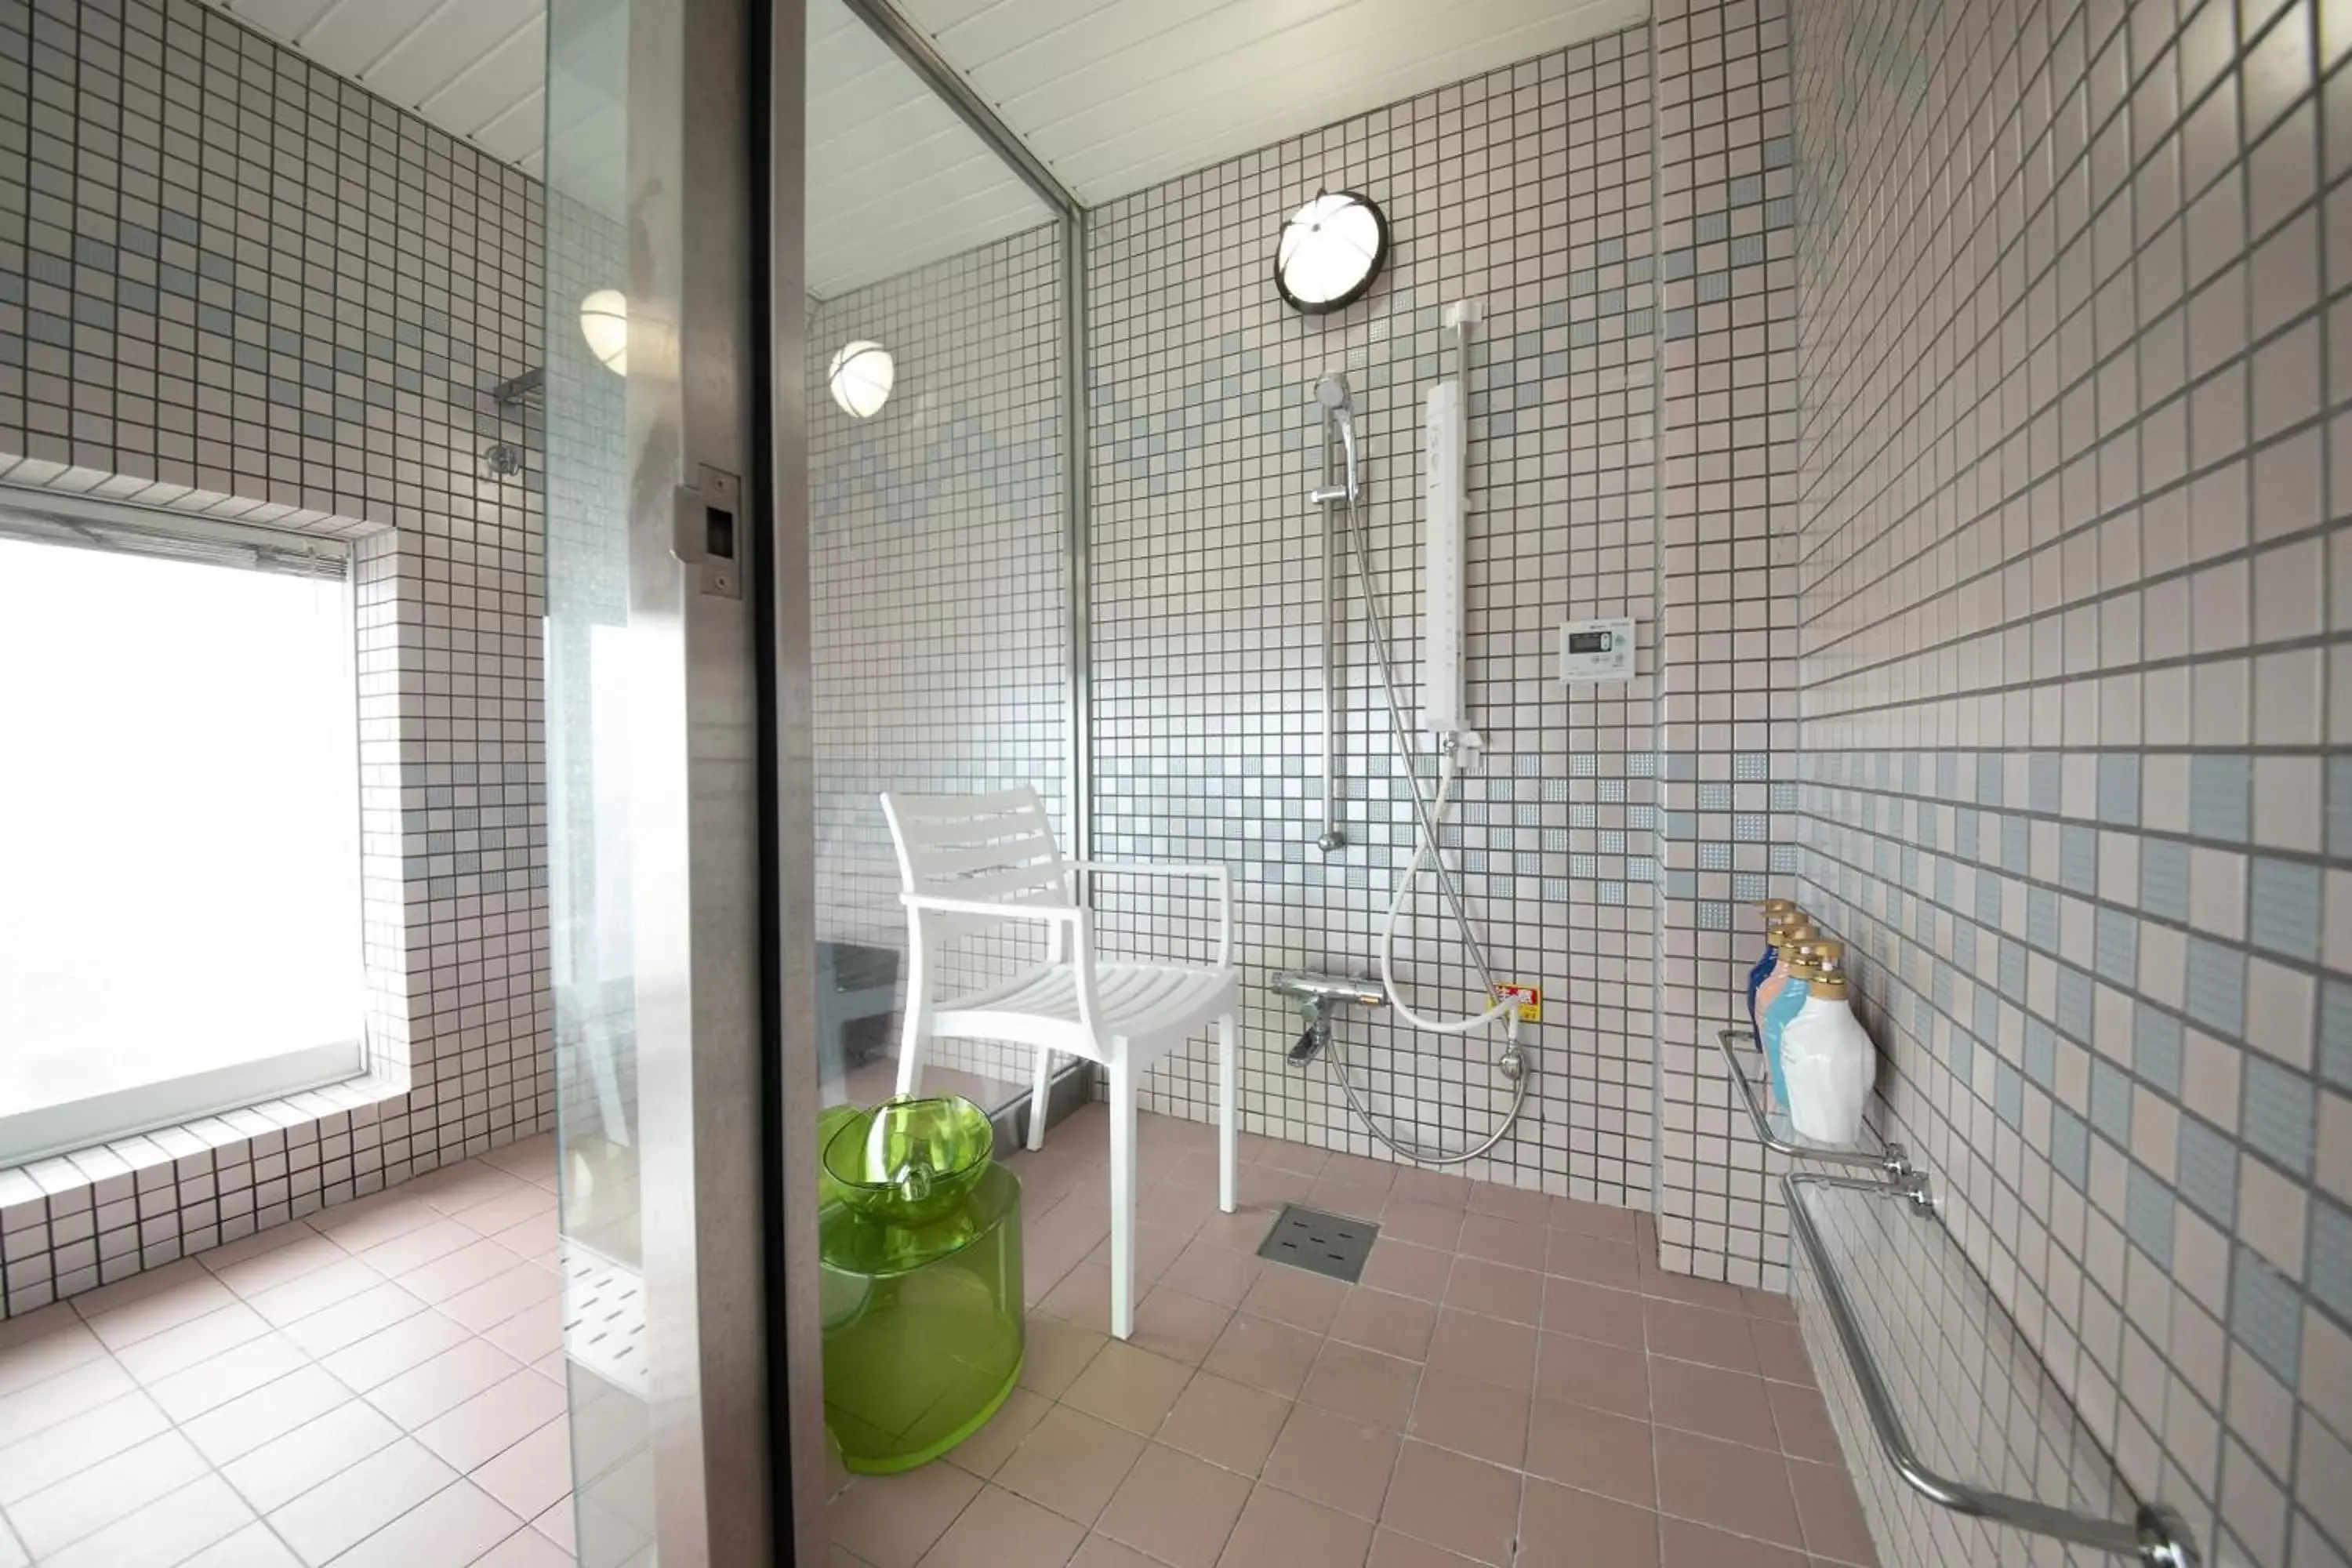 Area and facilities, Bathroom in Hotel Concerto Nagasaki